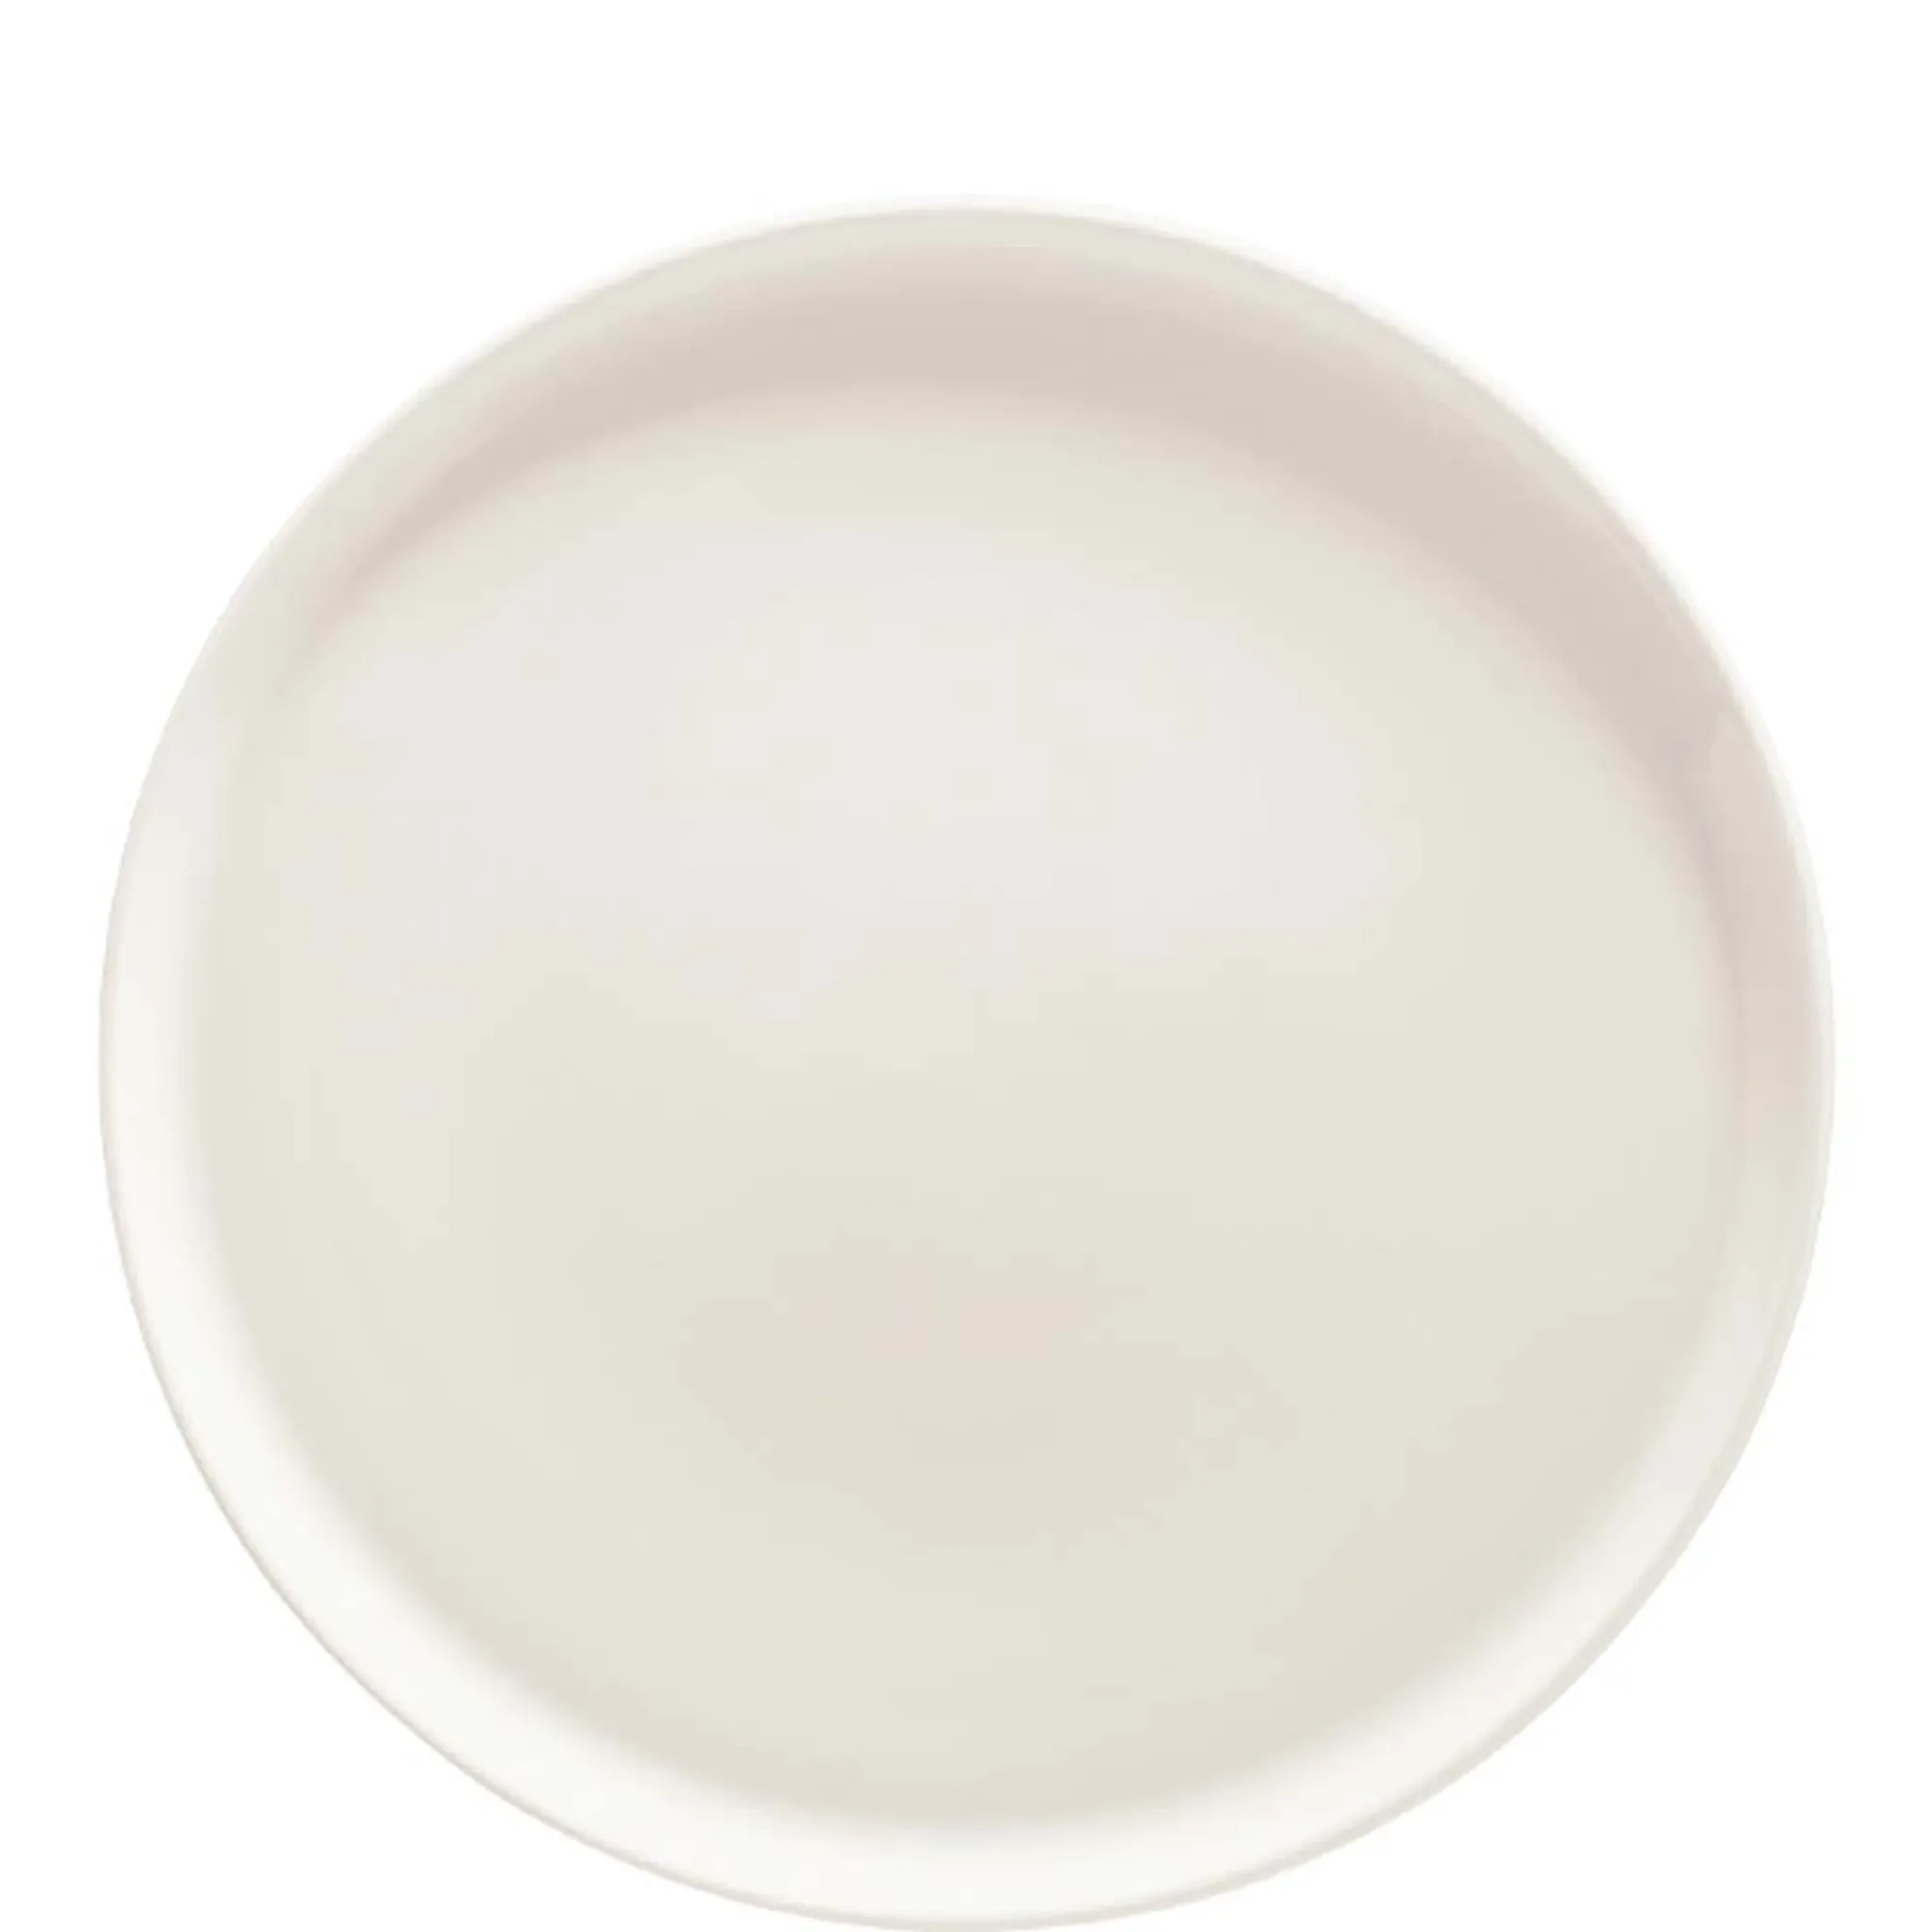 Bonna Premium Porcelain Premium 32.5cm, Stück creme-weiß, Cream 1 Pizzateller, 32cm, Porzellan